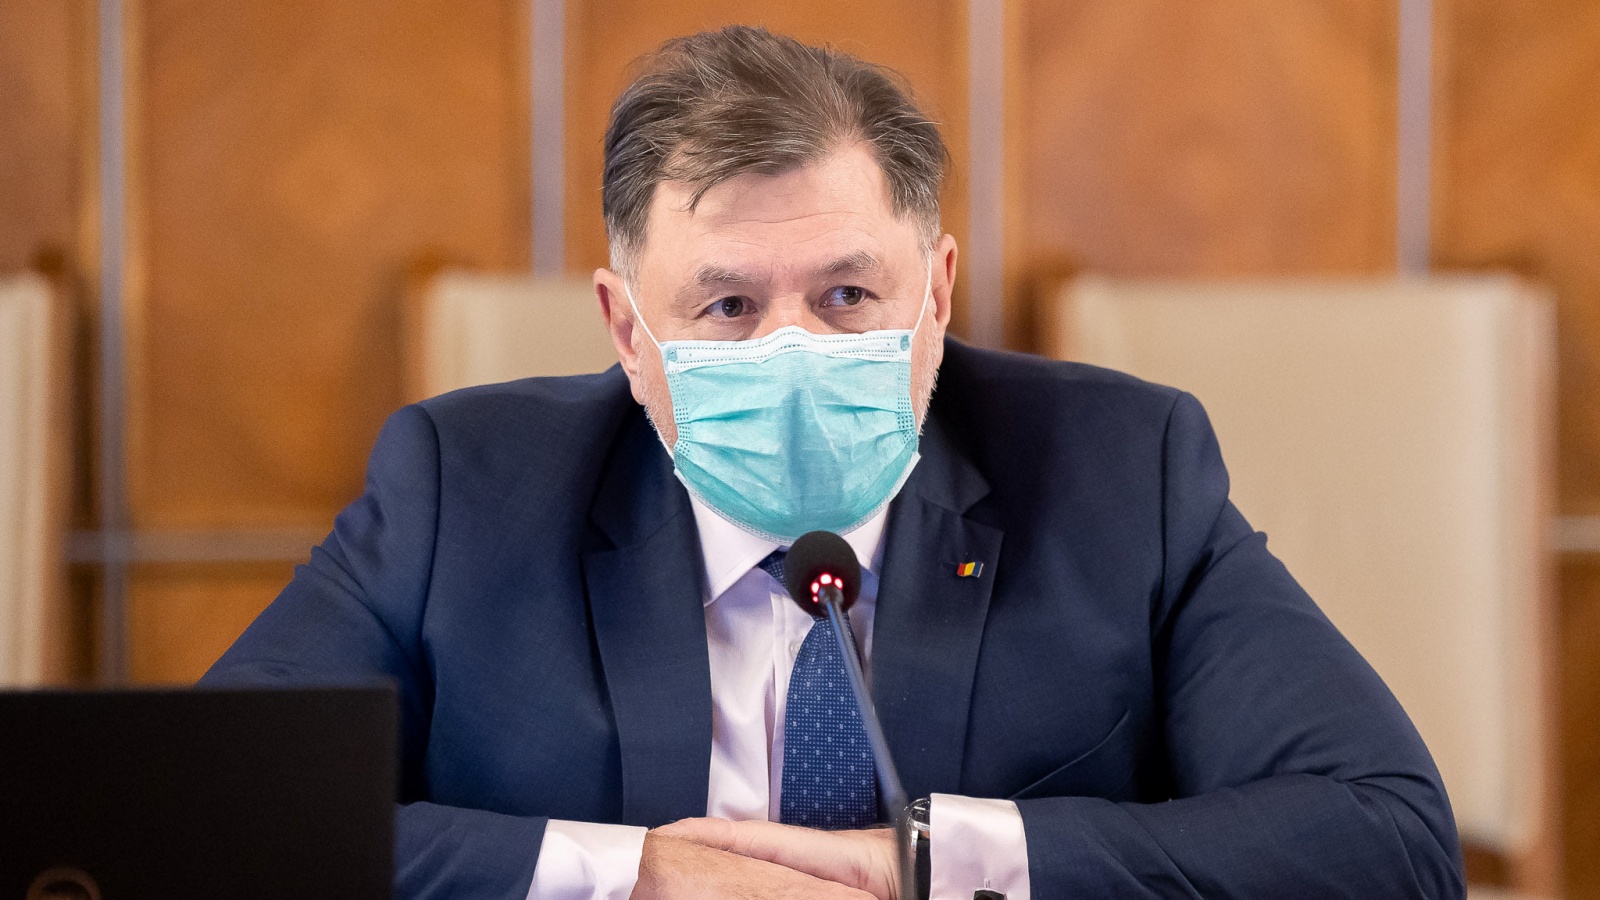 Die LAST-MINUTE-Warnung des Gesundheitsministers richtet sich an Rumänen im ganzen Land